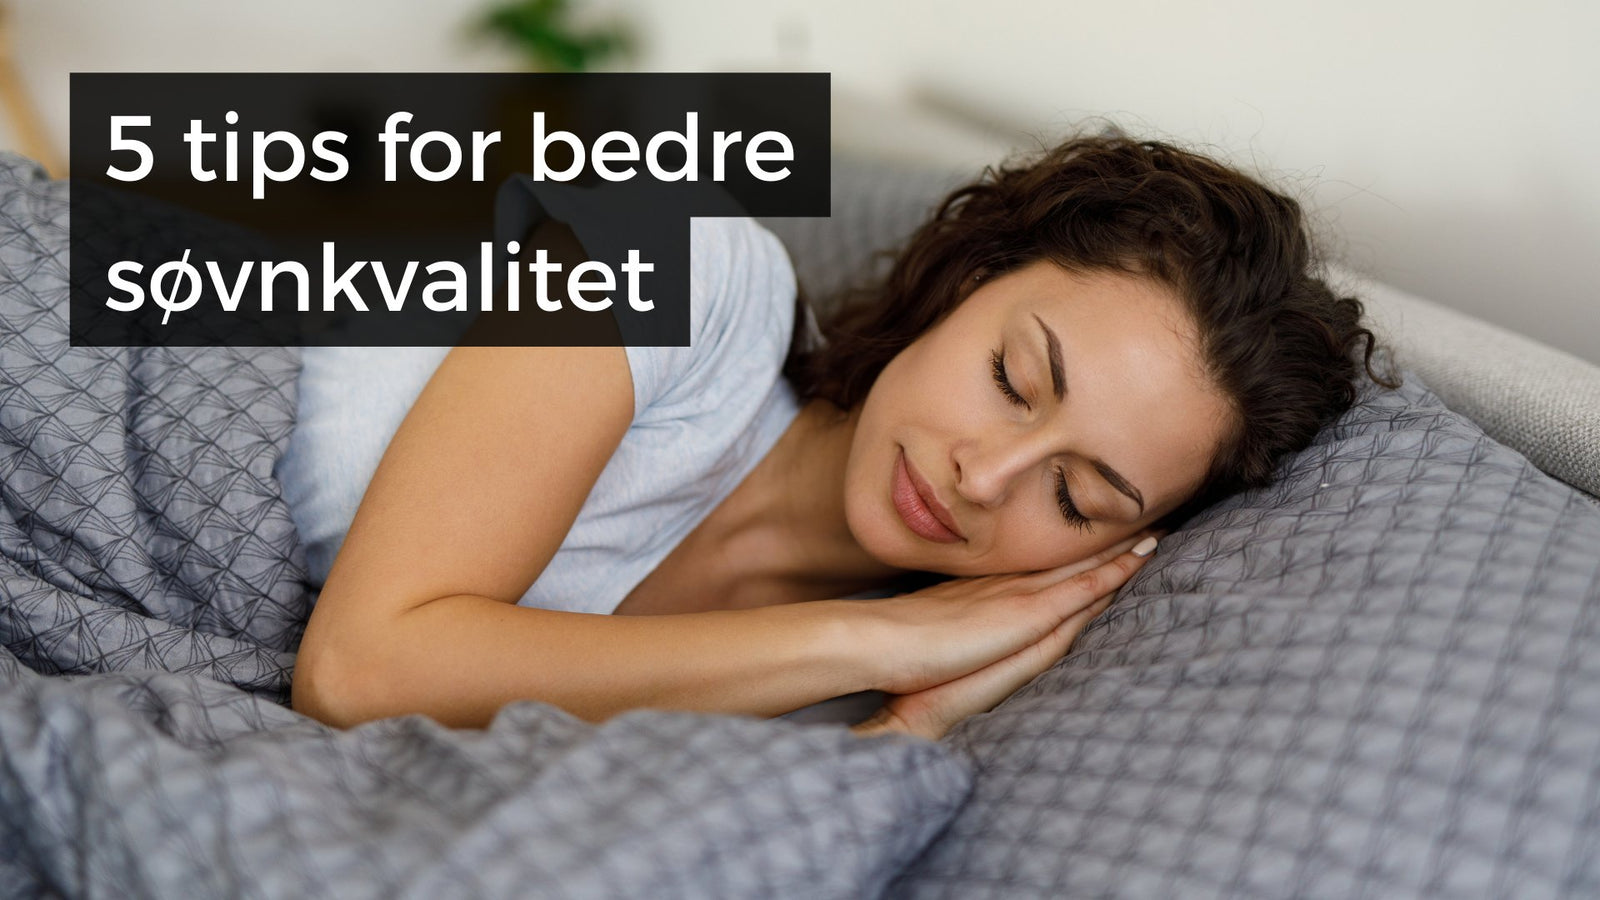 5 råd for bedre søvnkvalitet - Treningsgiganten.no